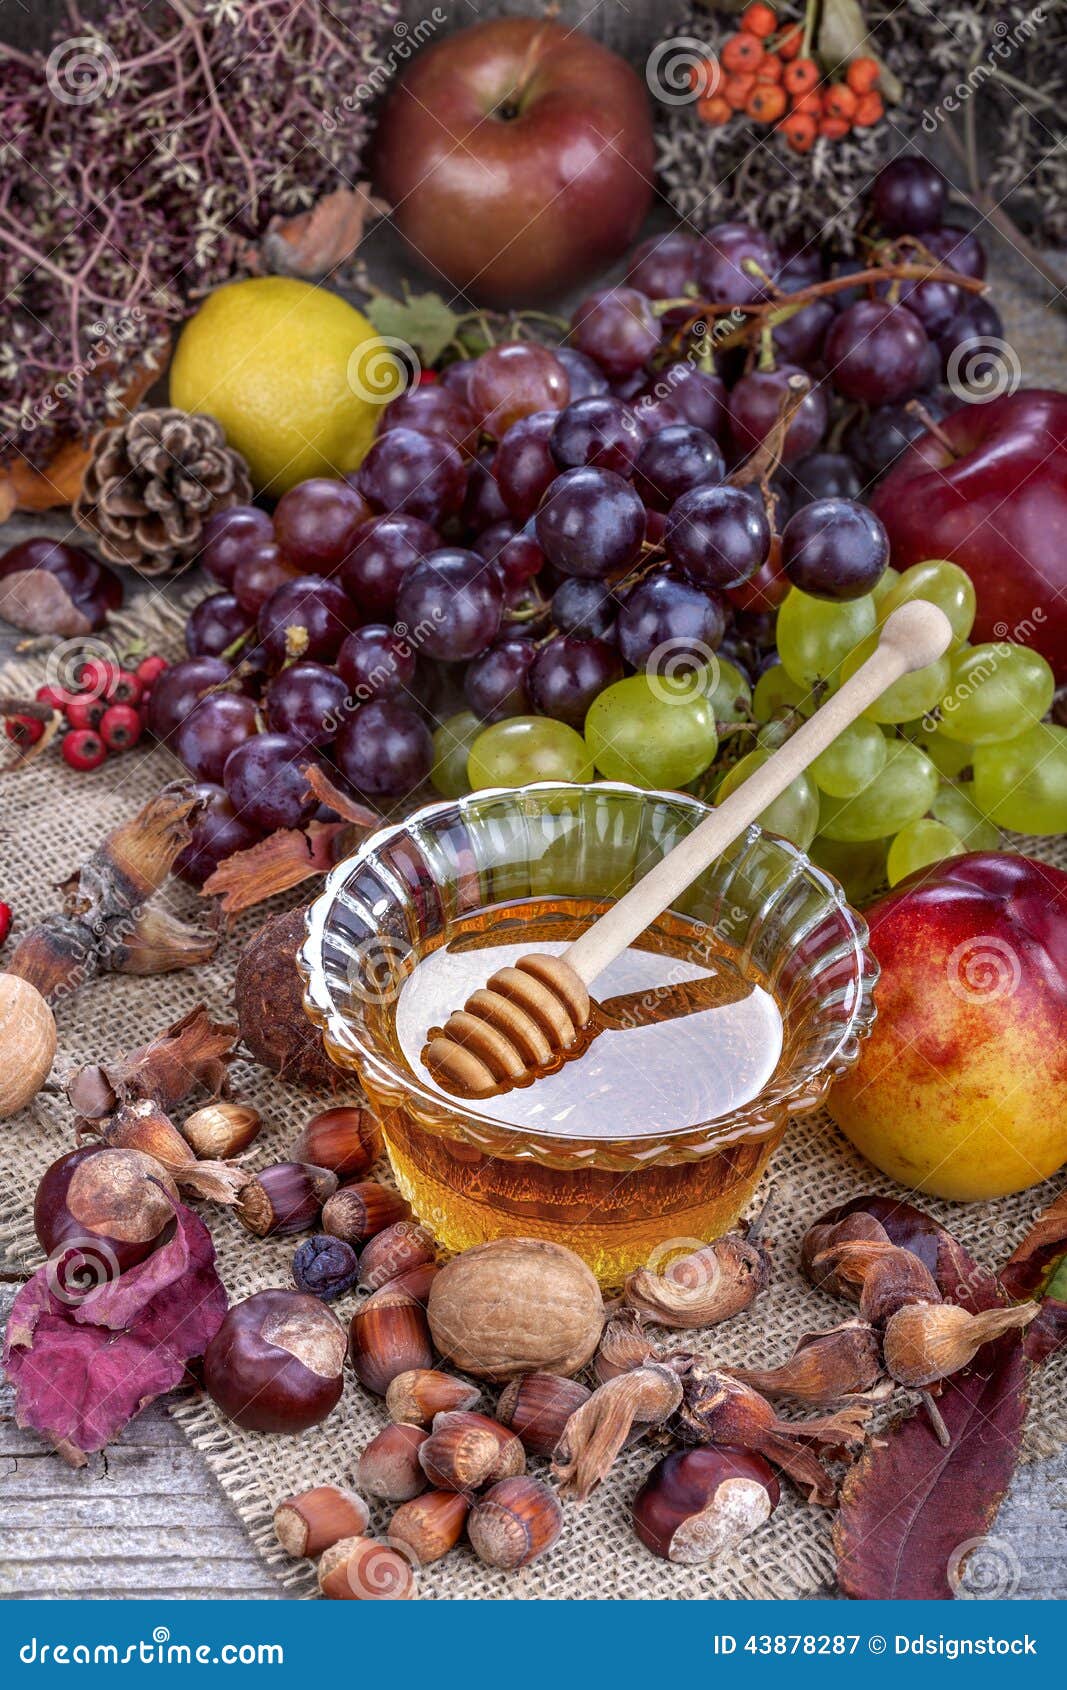 Фрукты орехи мед. Овощи фрукты орехи мед. Мед и фрукты. Орехи и фрукты в меду фото. Угощения пирожное, фрукты мед орехи.